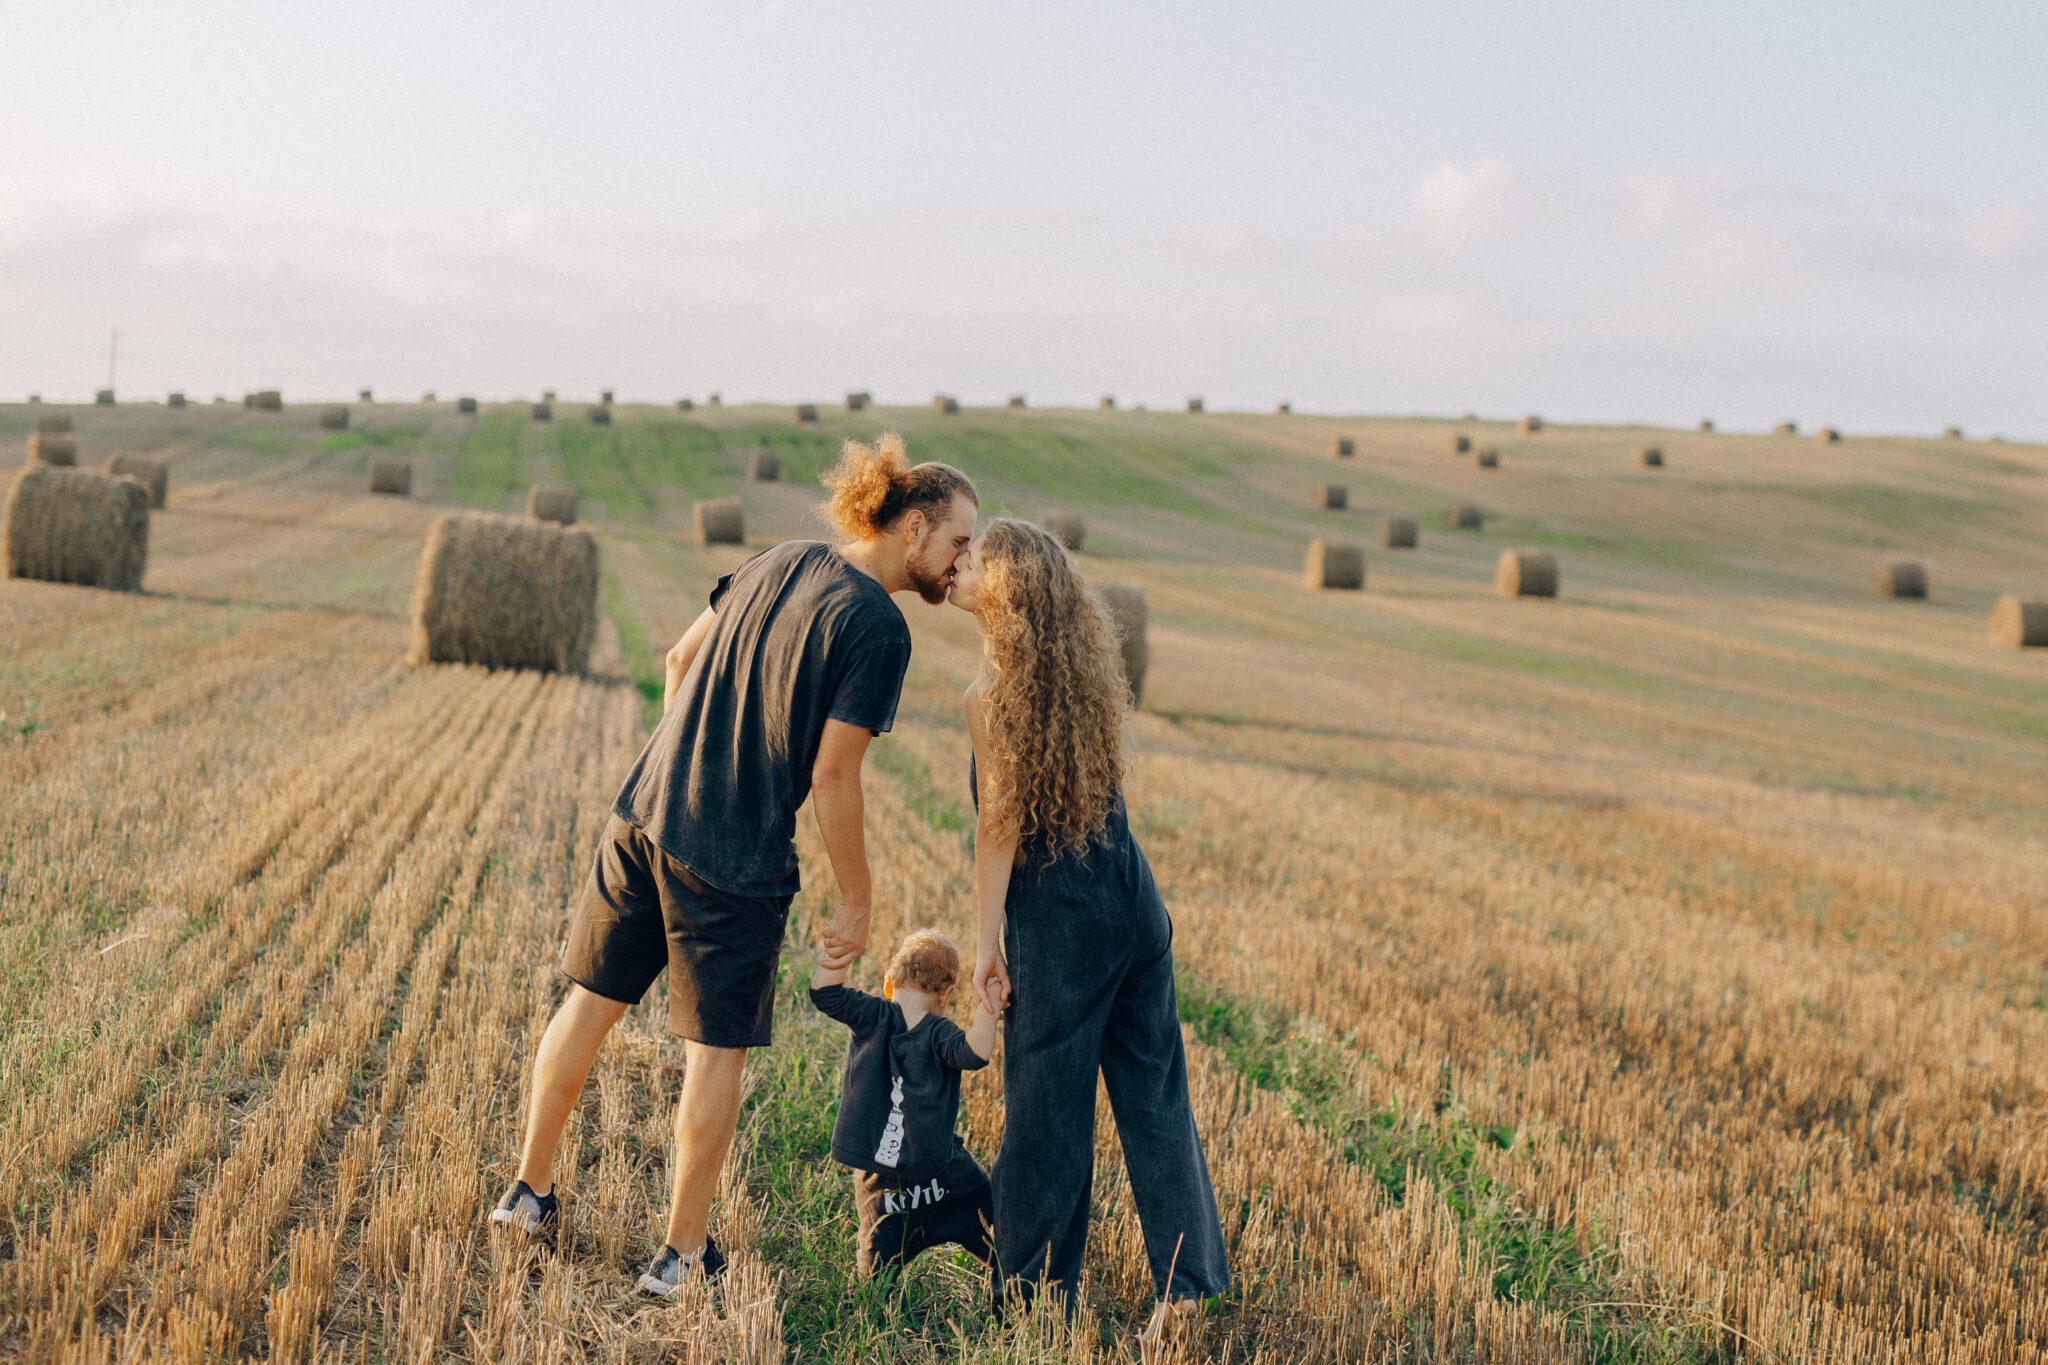 Man en vrouw met klein kindje kussen in veld met hooibalen